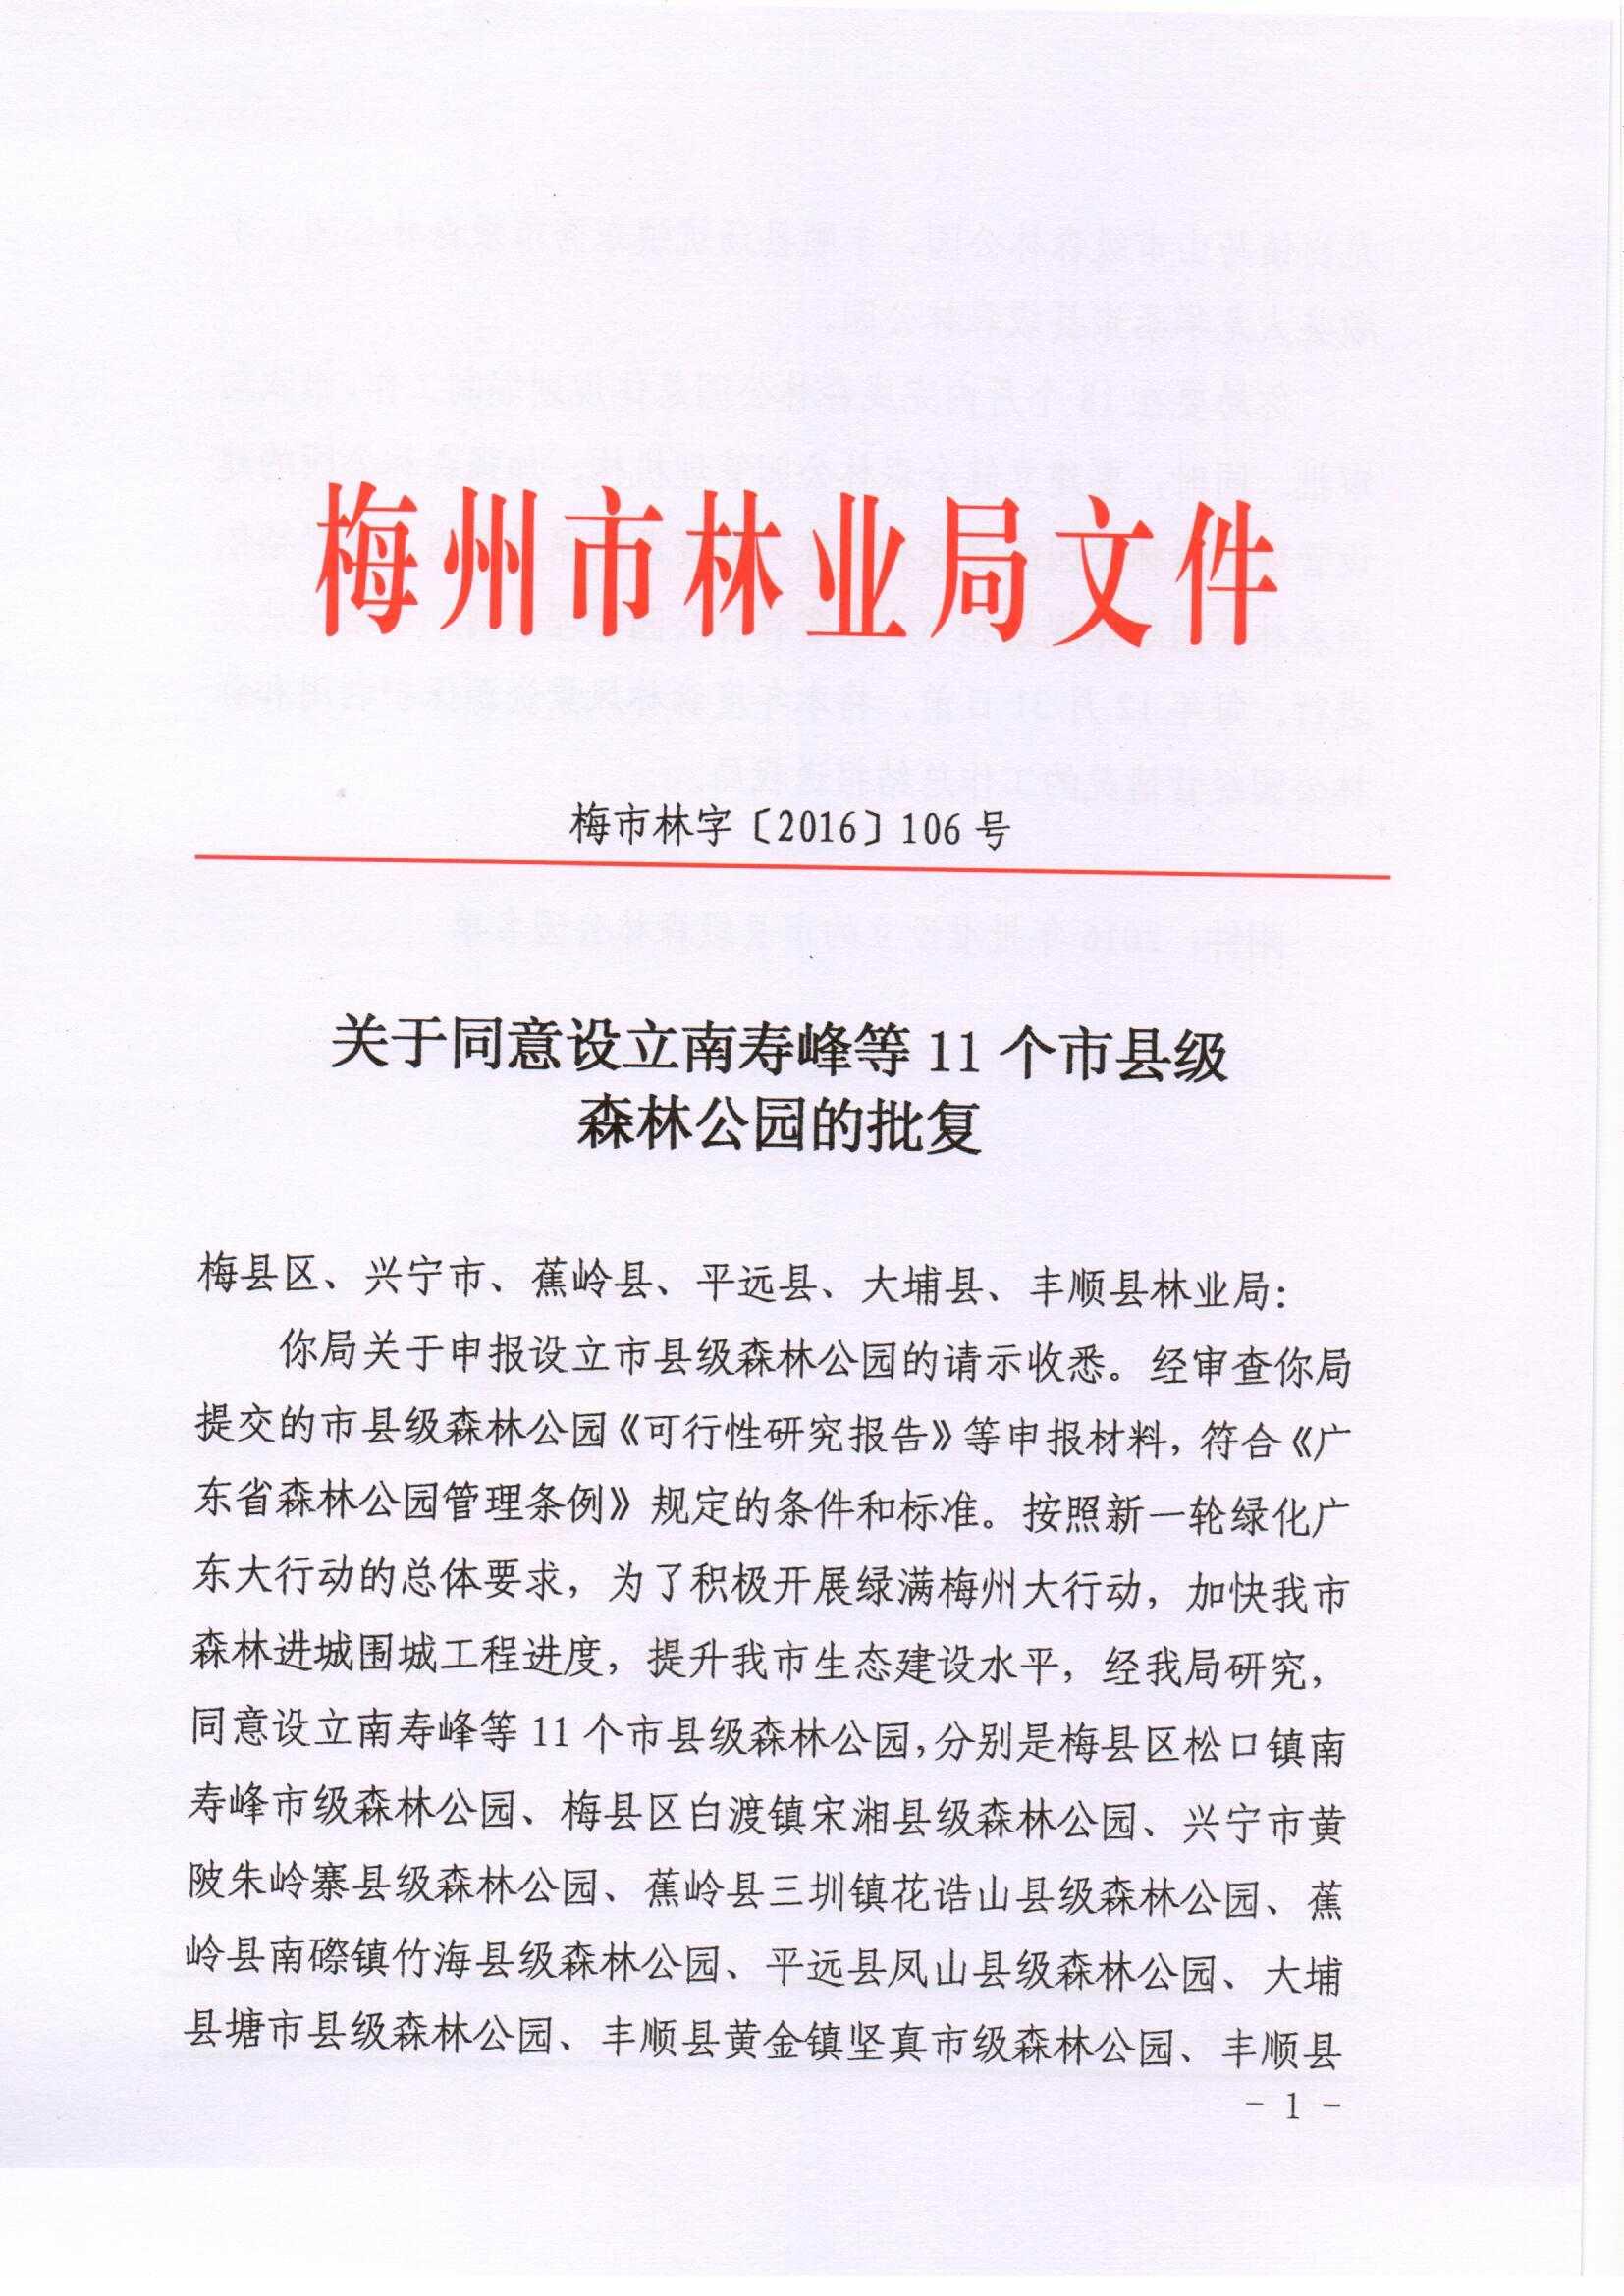 关于同意设立南寿峰等11个市县级森林公园的批复-2016.10.26_页面_1